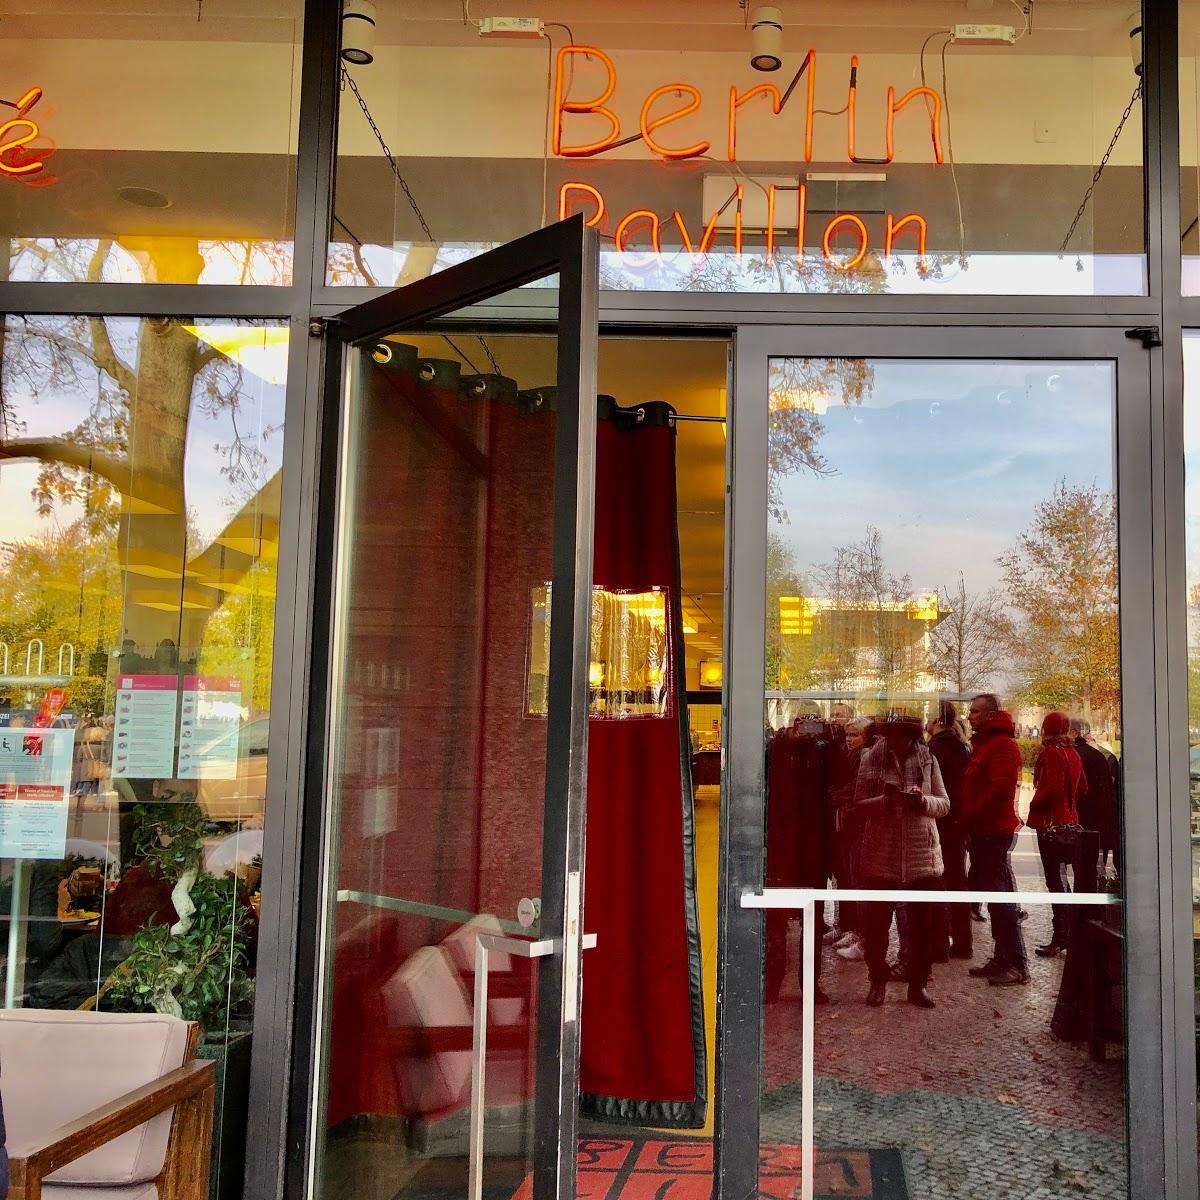 Restaurant "Berlin Pavillon" in  Berlin